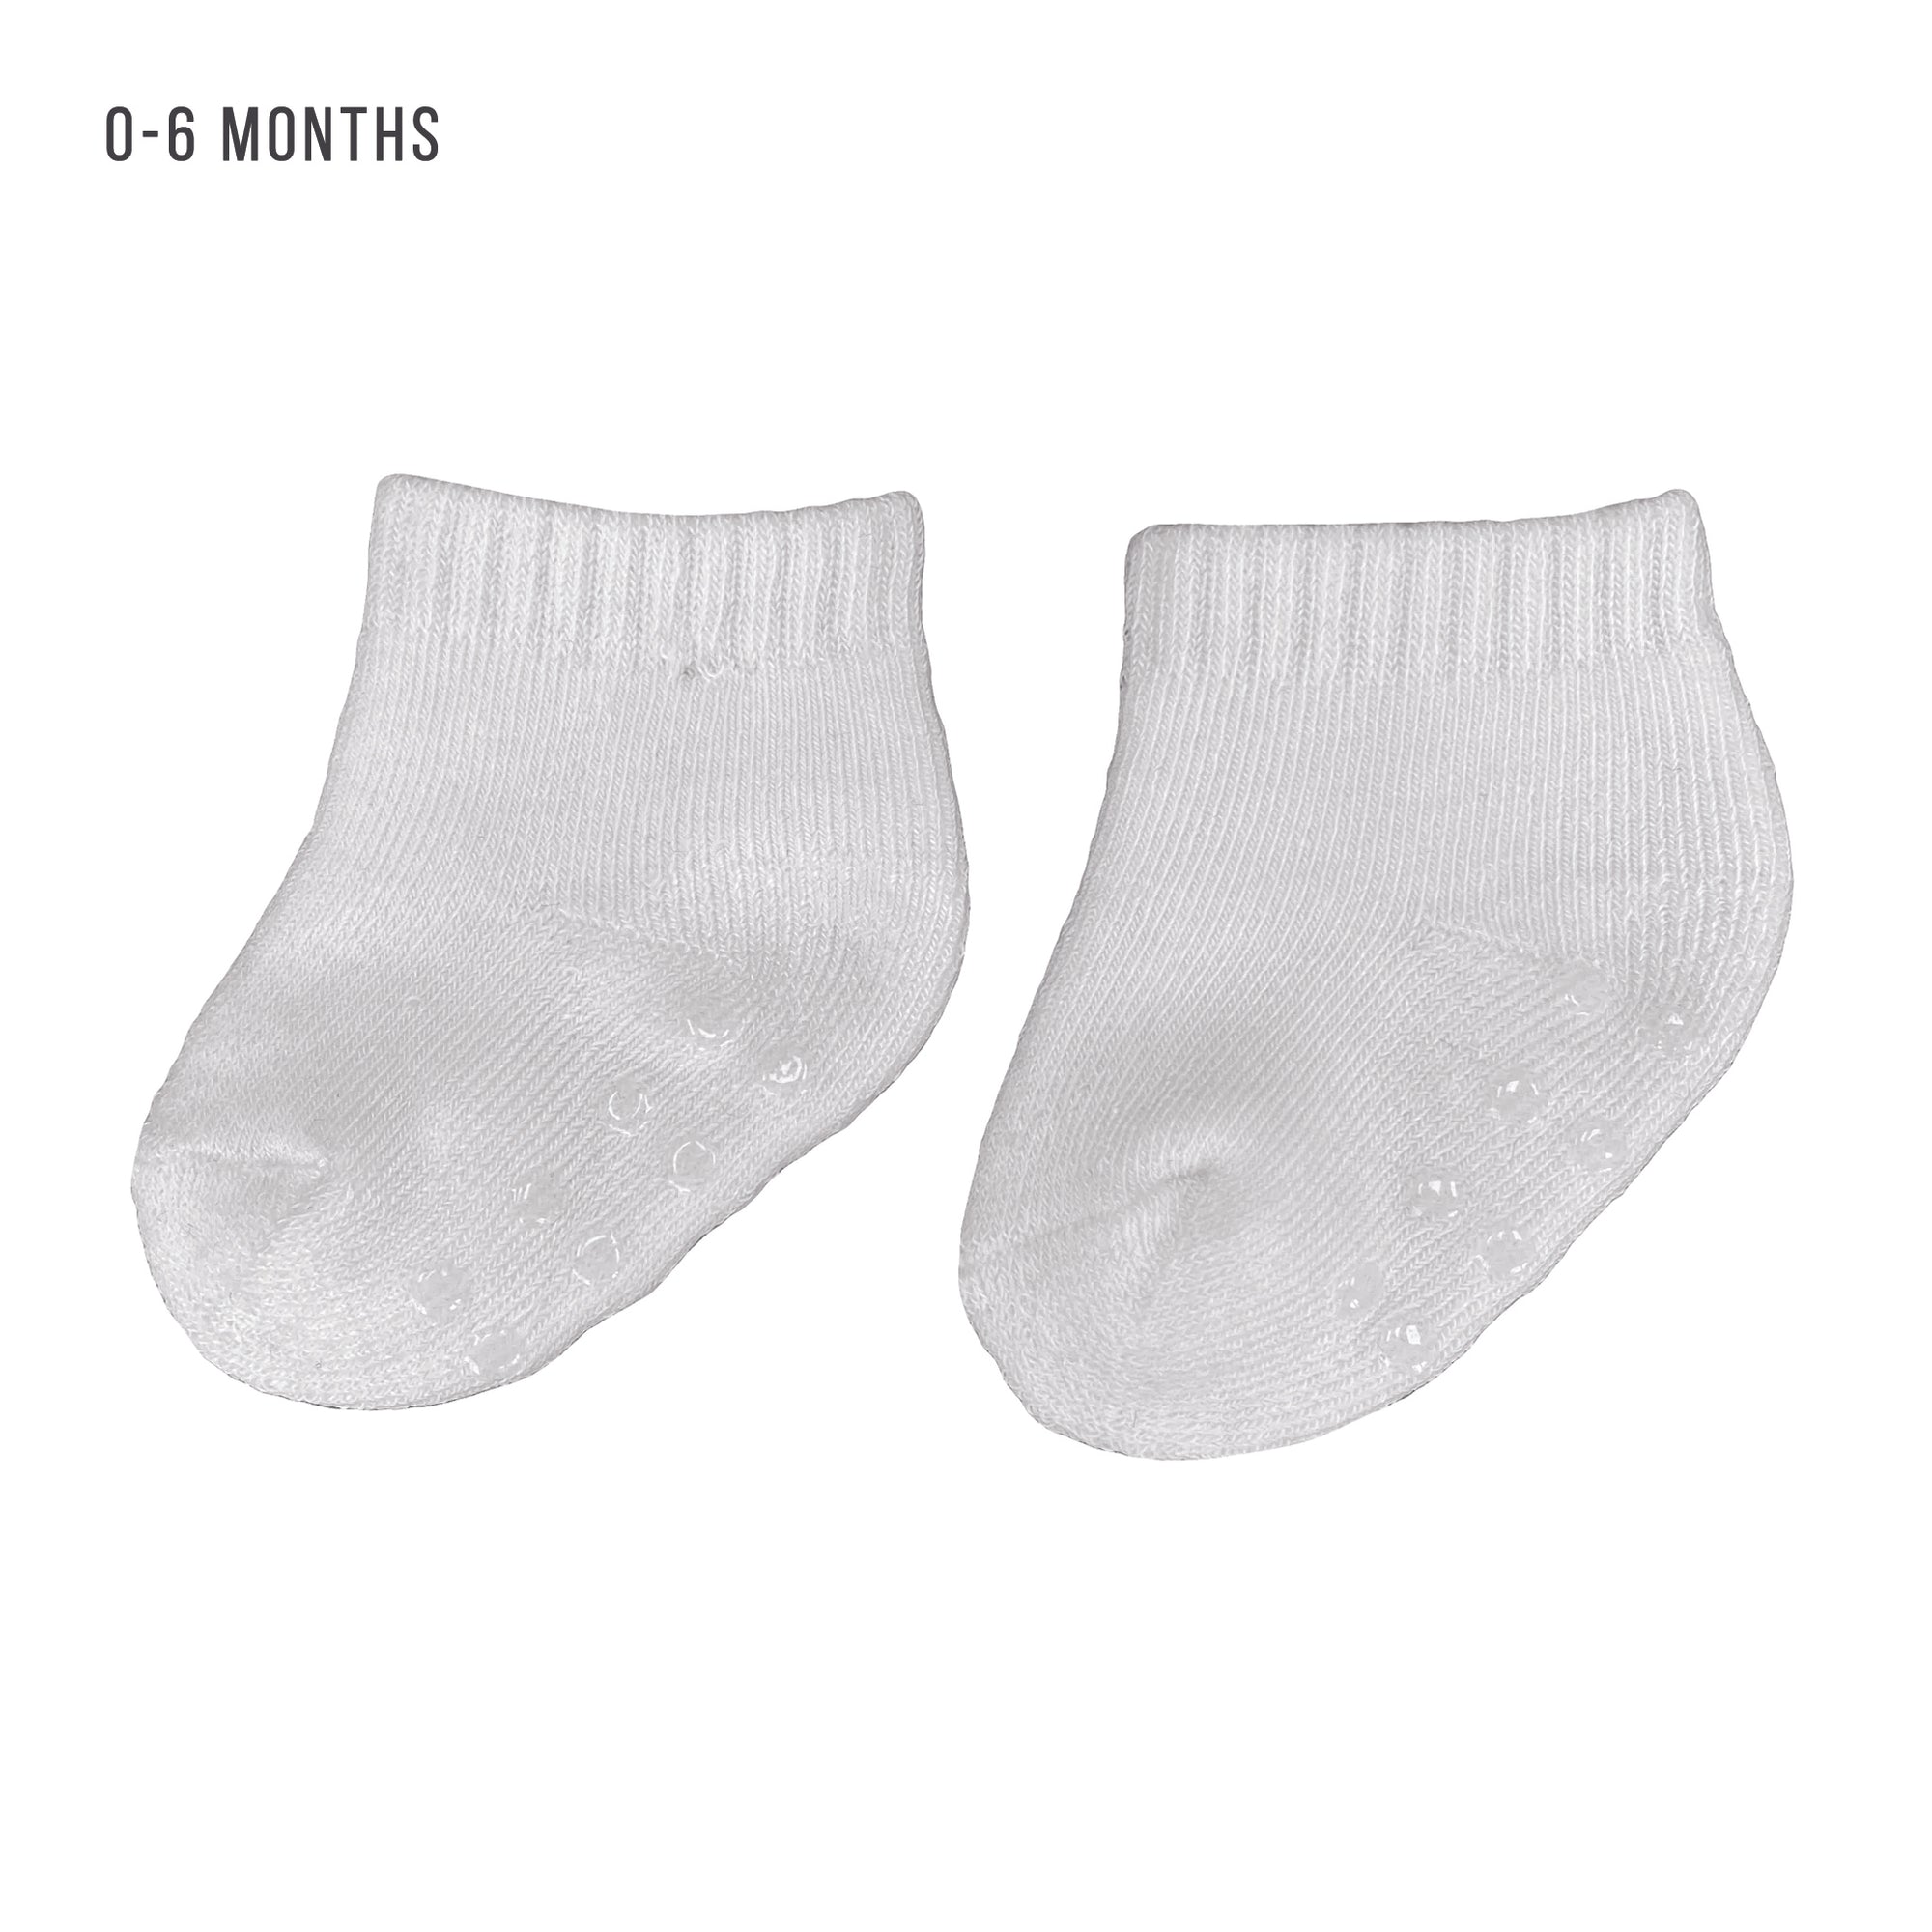 Blank Infant Socks 6-Pack